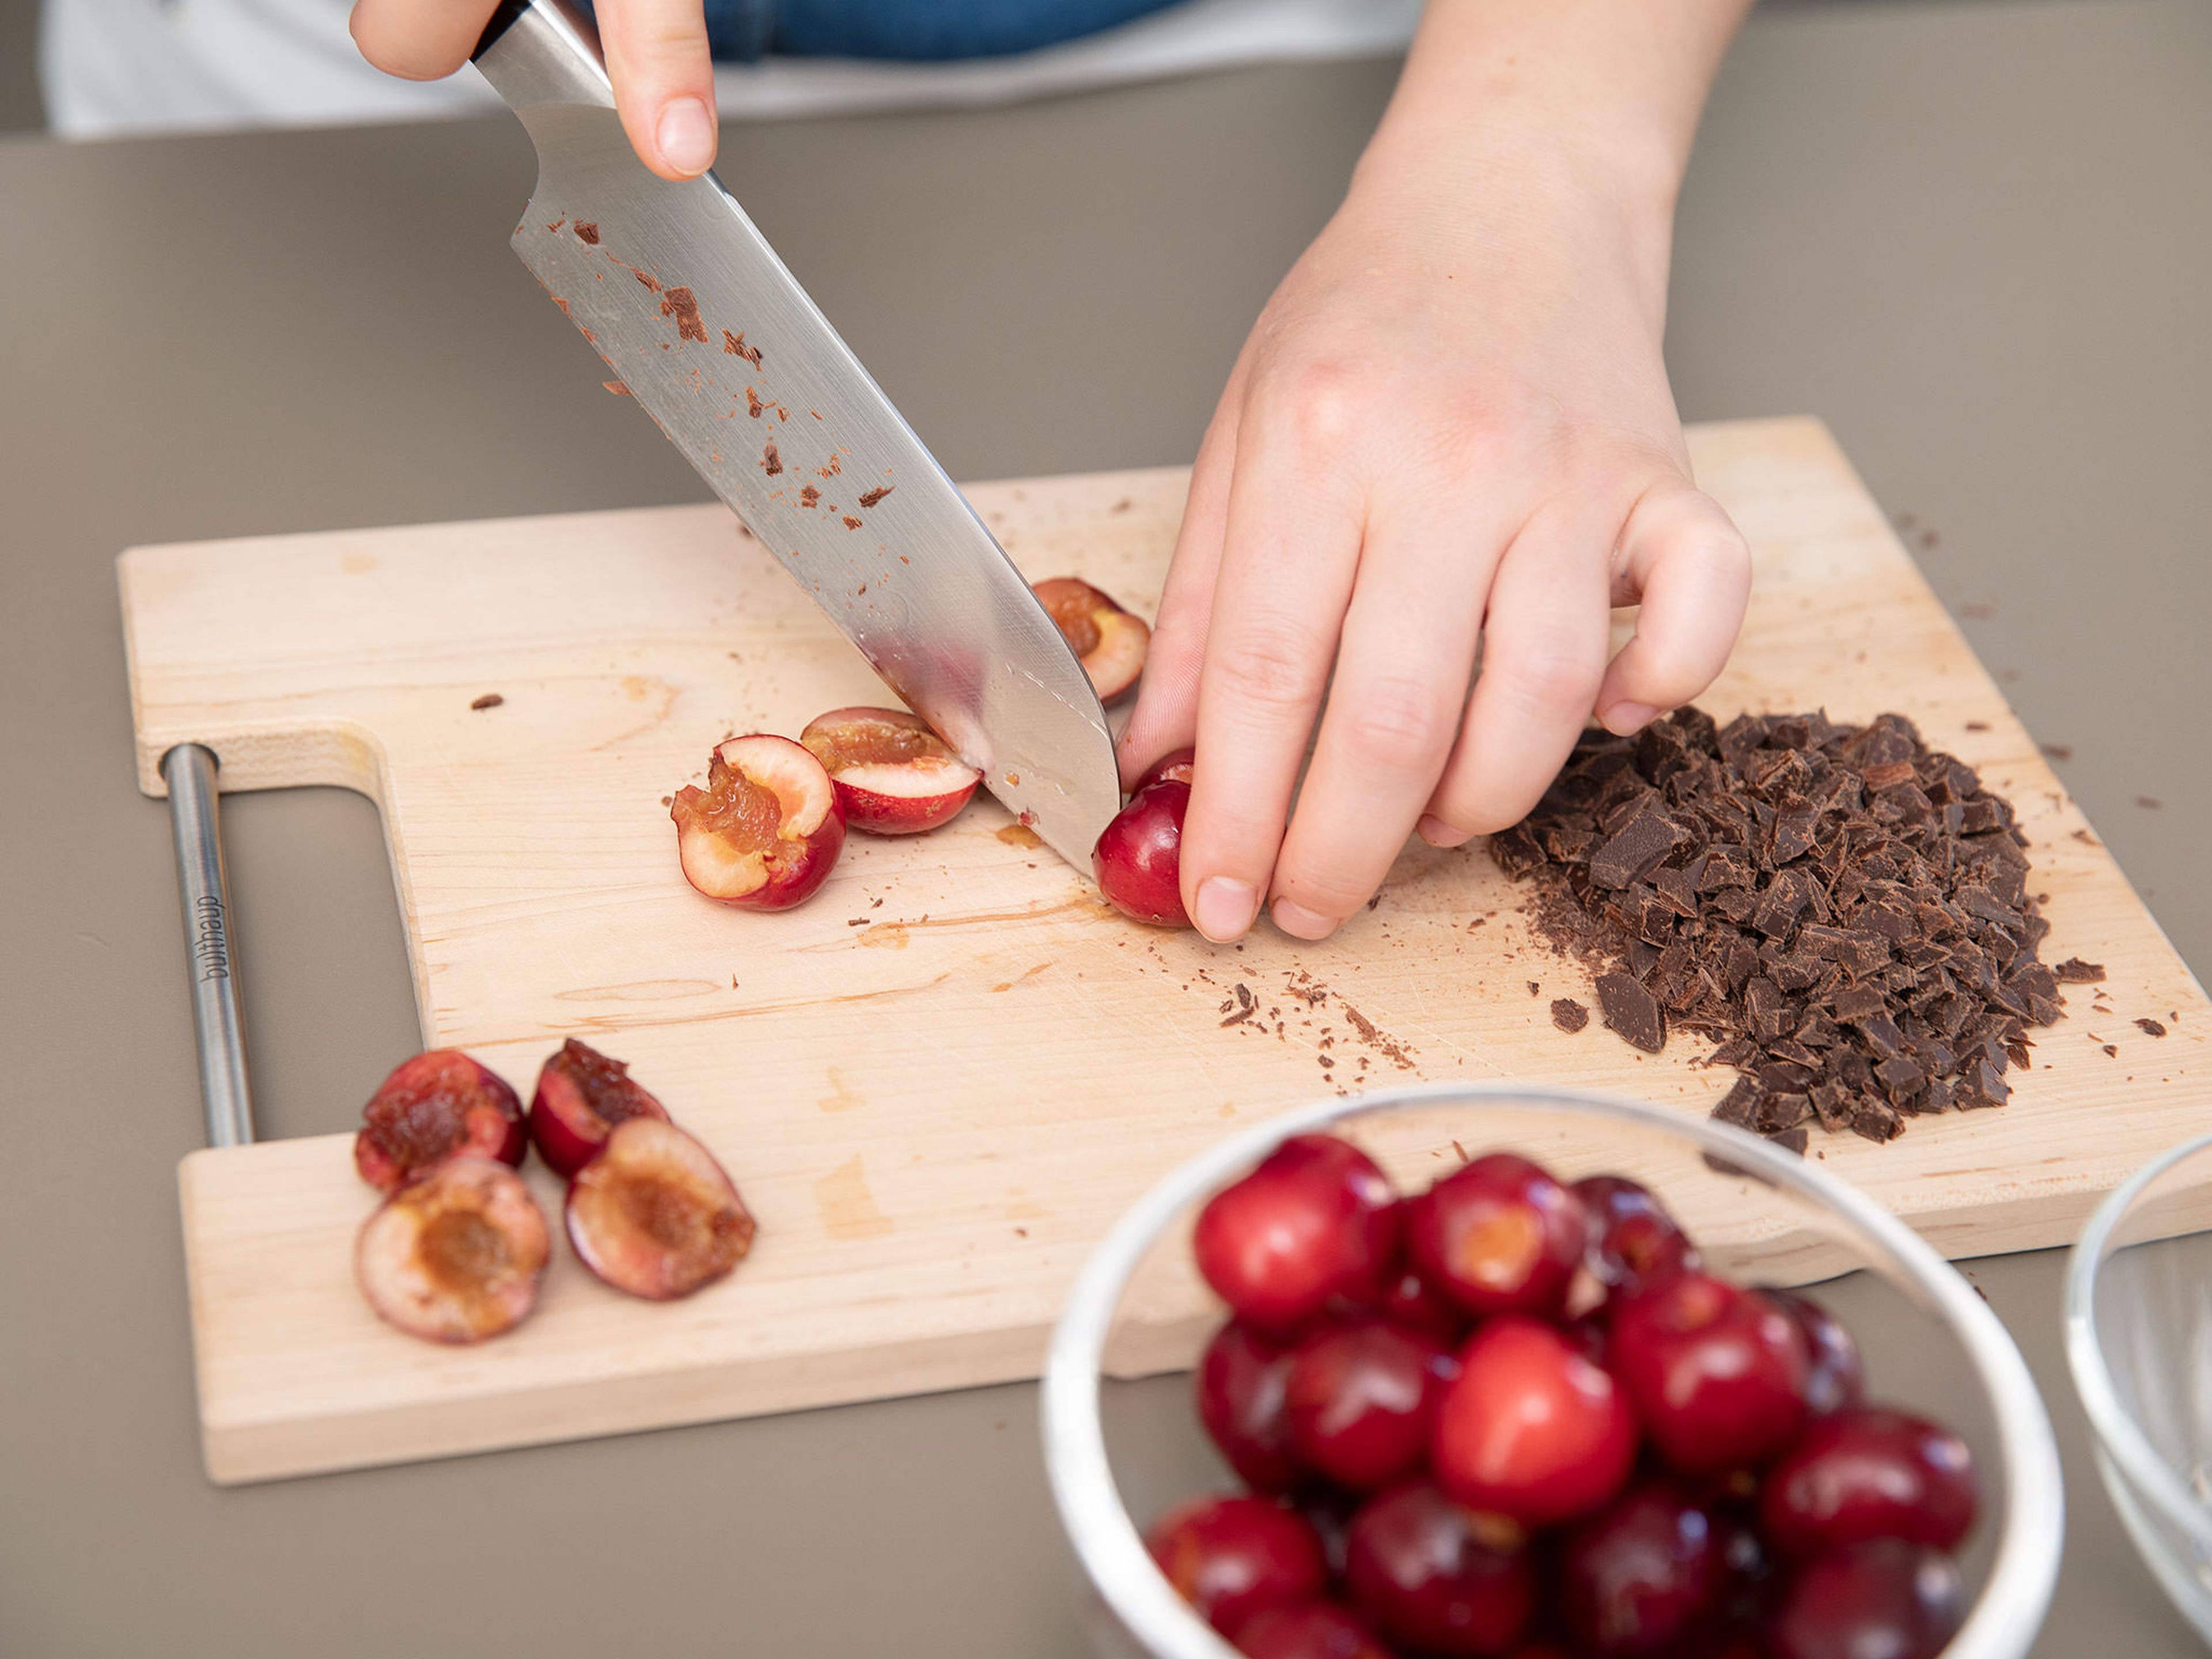 Schokolade fein hacken. Kirschen halbieren, entkernen und in kleine Stücke schneiden. In den Teig geben und vermengen.